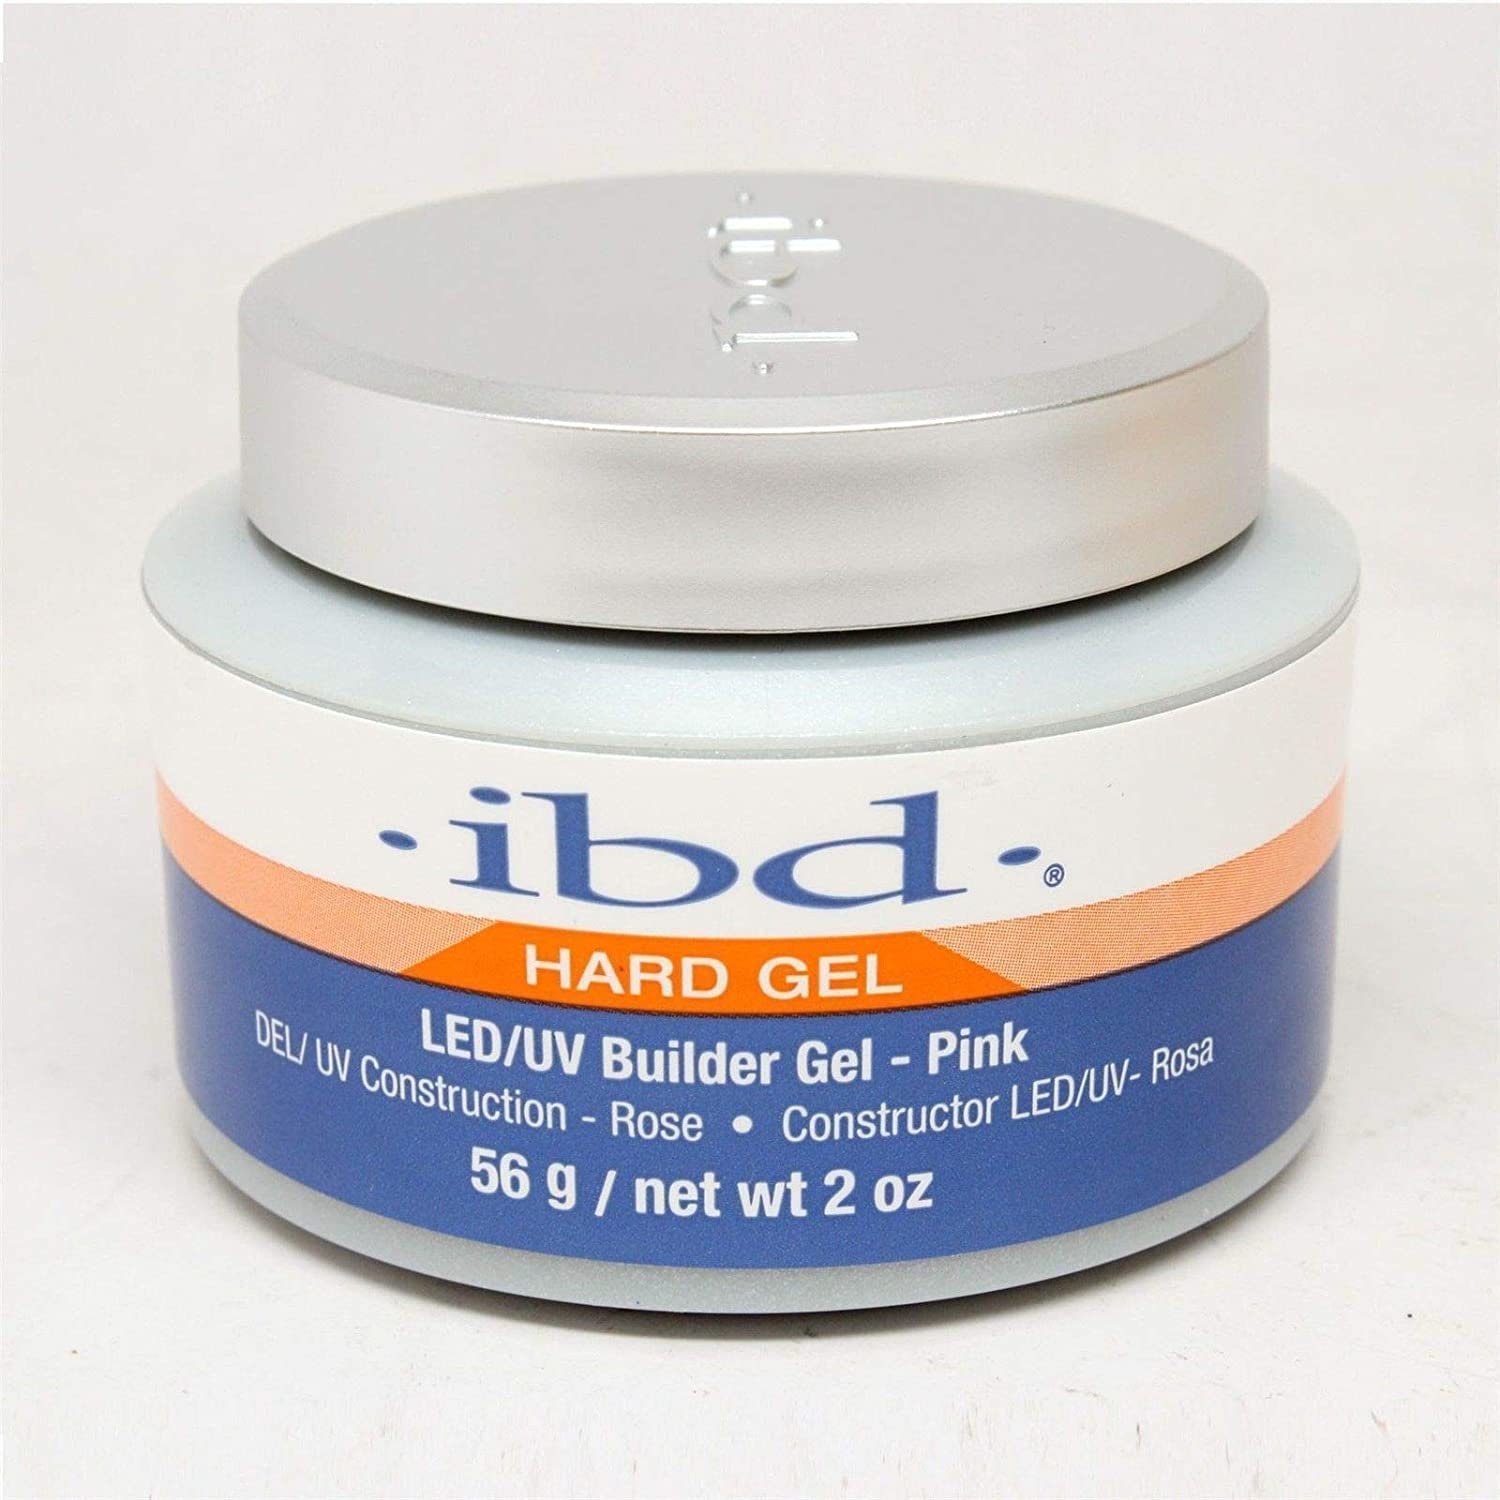 IBD Hard Gel - Clear Gel - 8oz